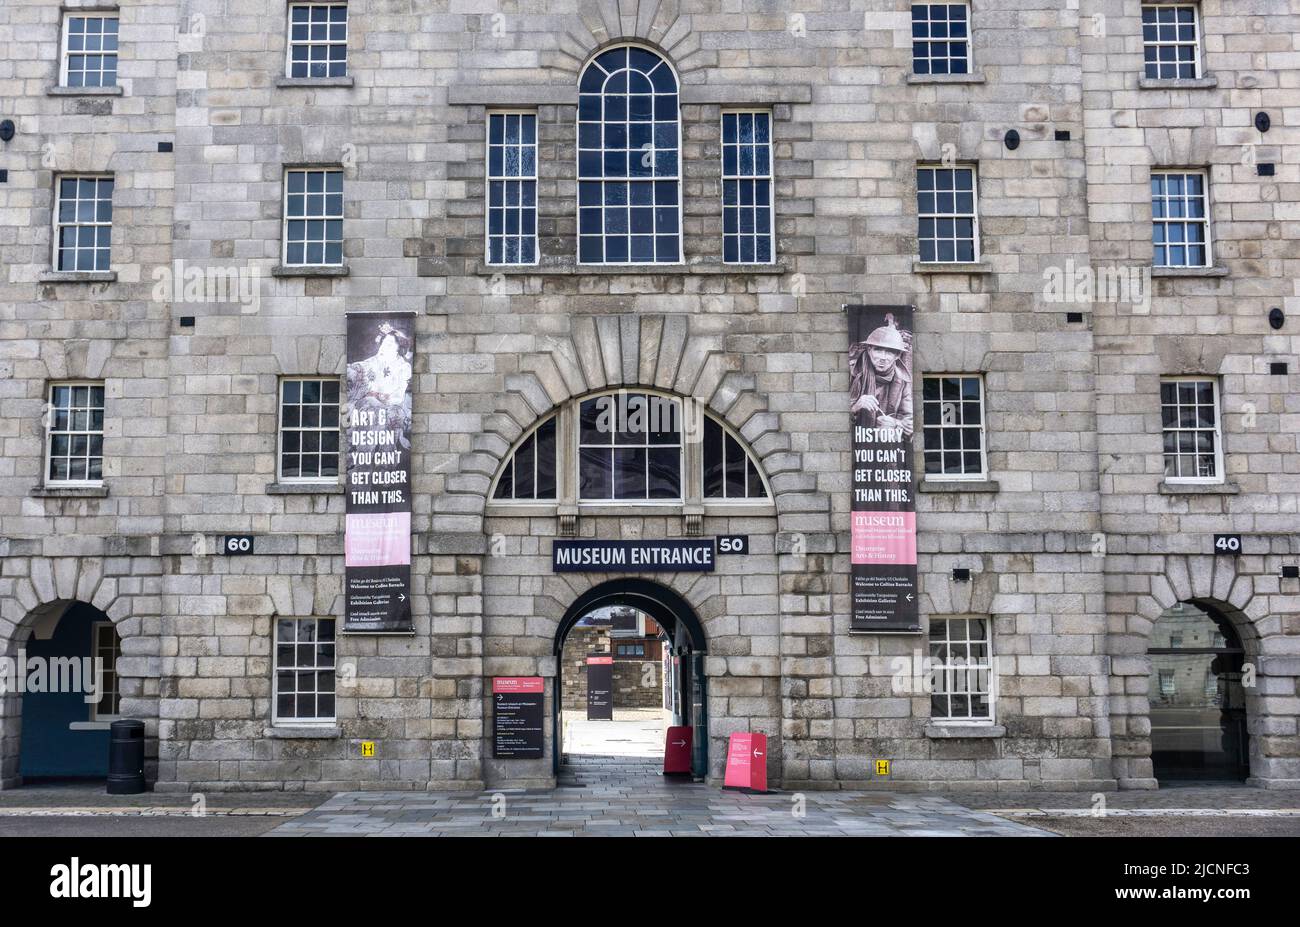 Museo Collins Barracks, dedicado a la historia de Irlanda y las Artes Decorativas. Una rama del Museo Nacional de Irlanda, Arbour Hill, Dublín. Foto de stock